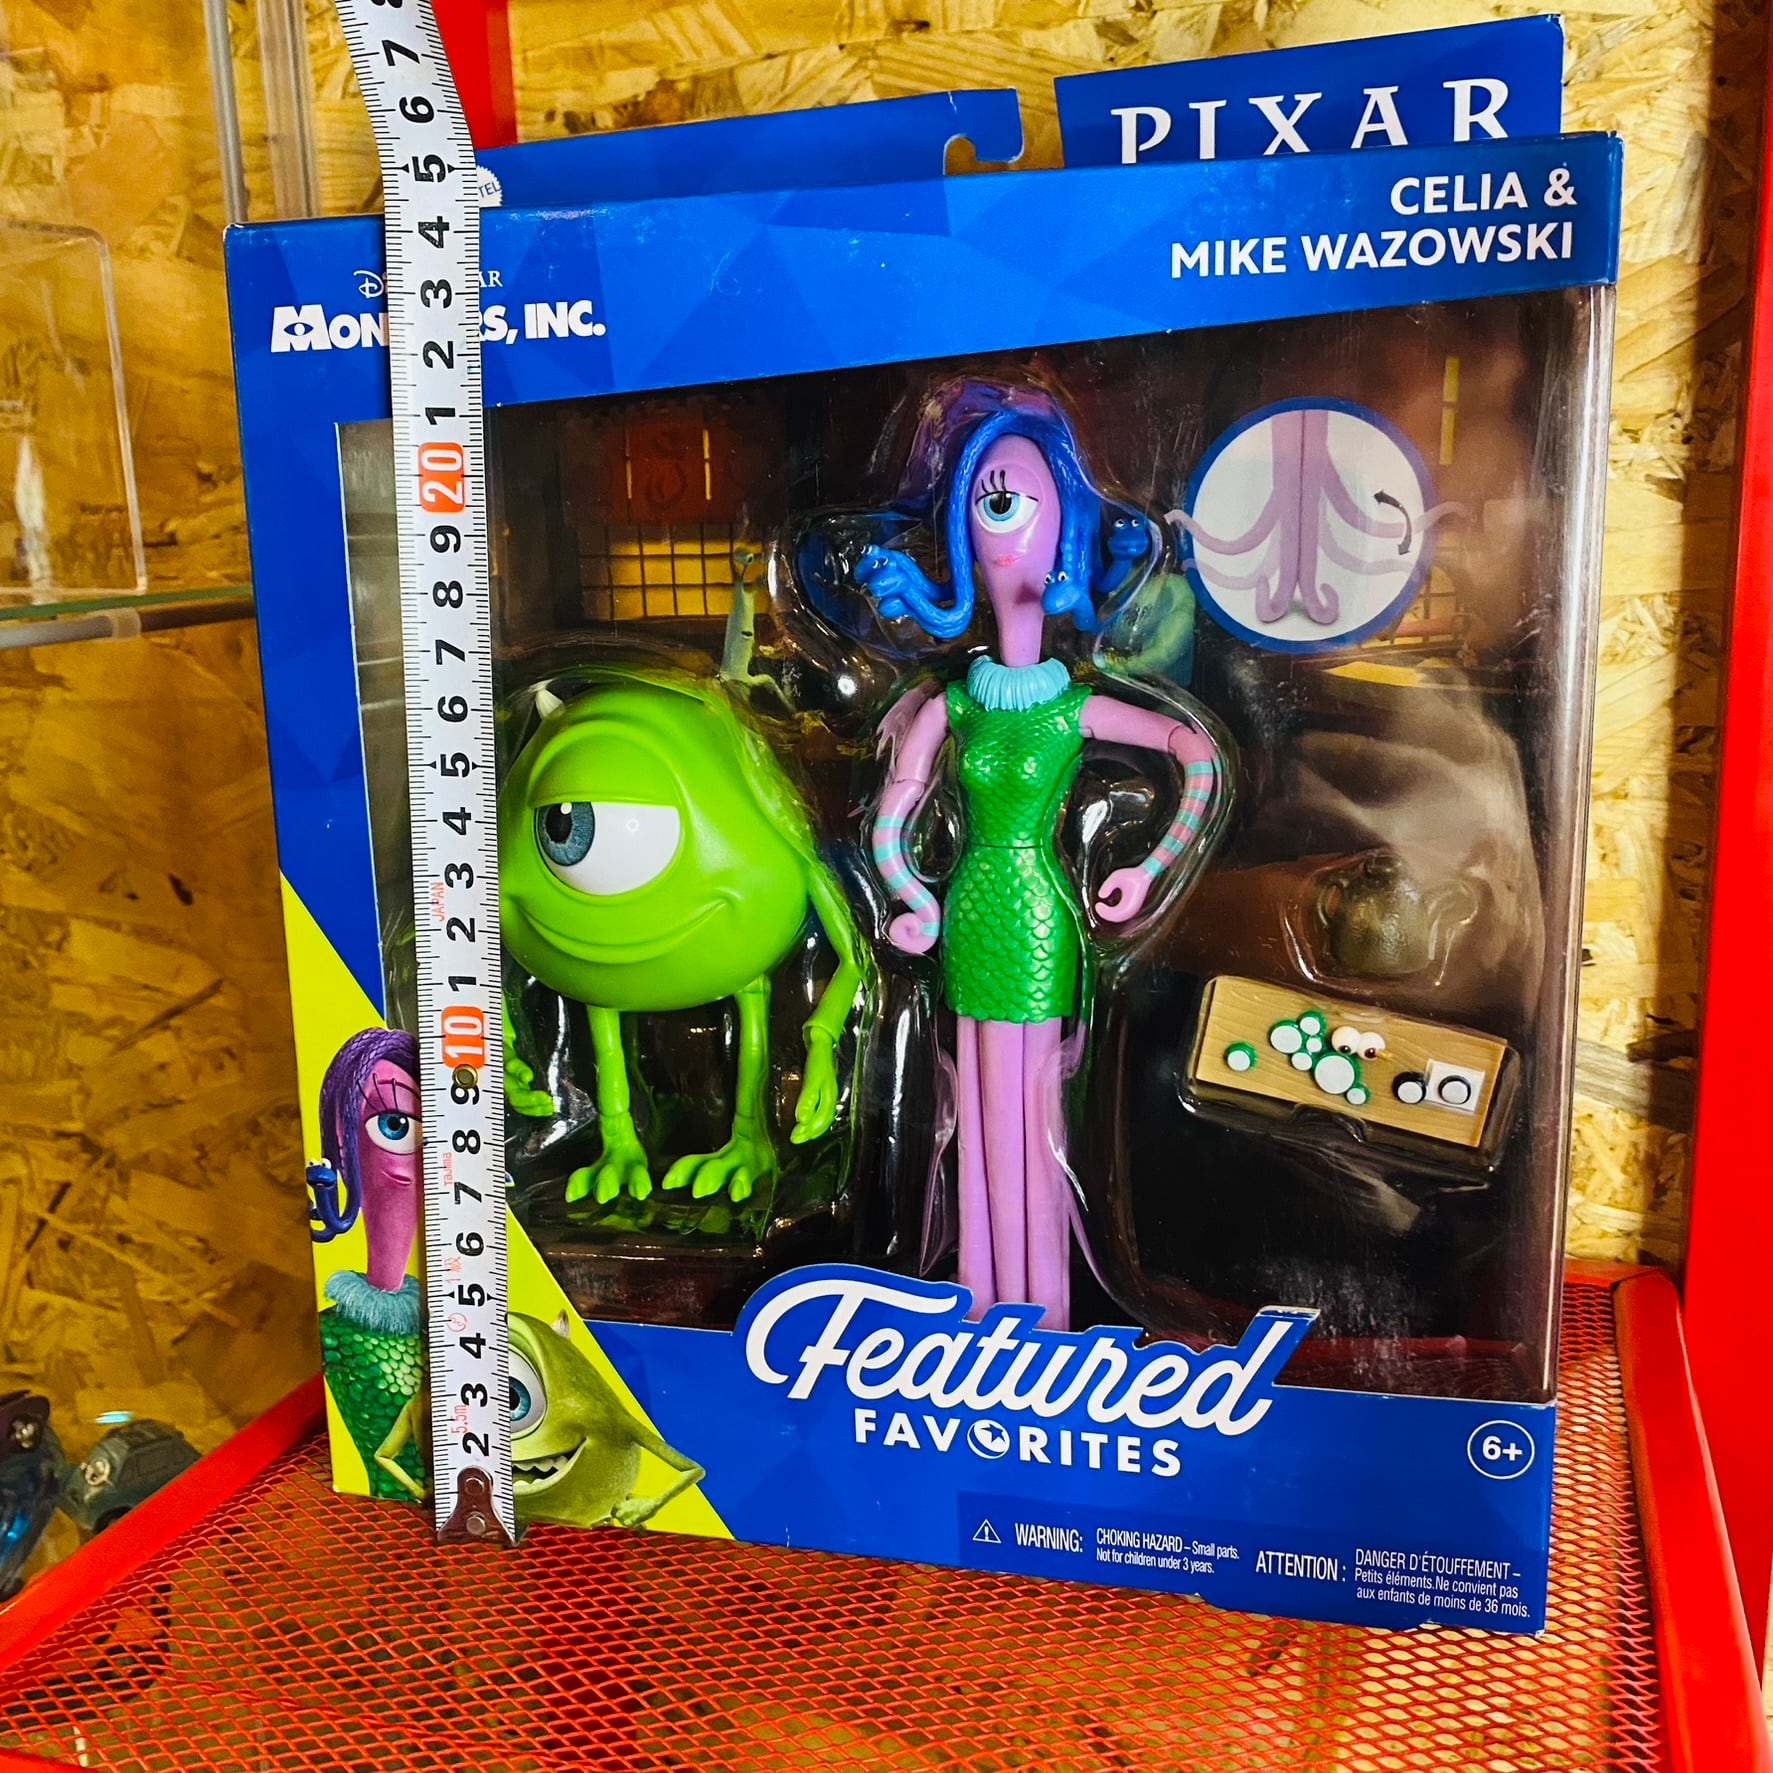 Mattel Pixar Featured Favorites『モンスターズ・インク 』セリア